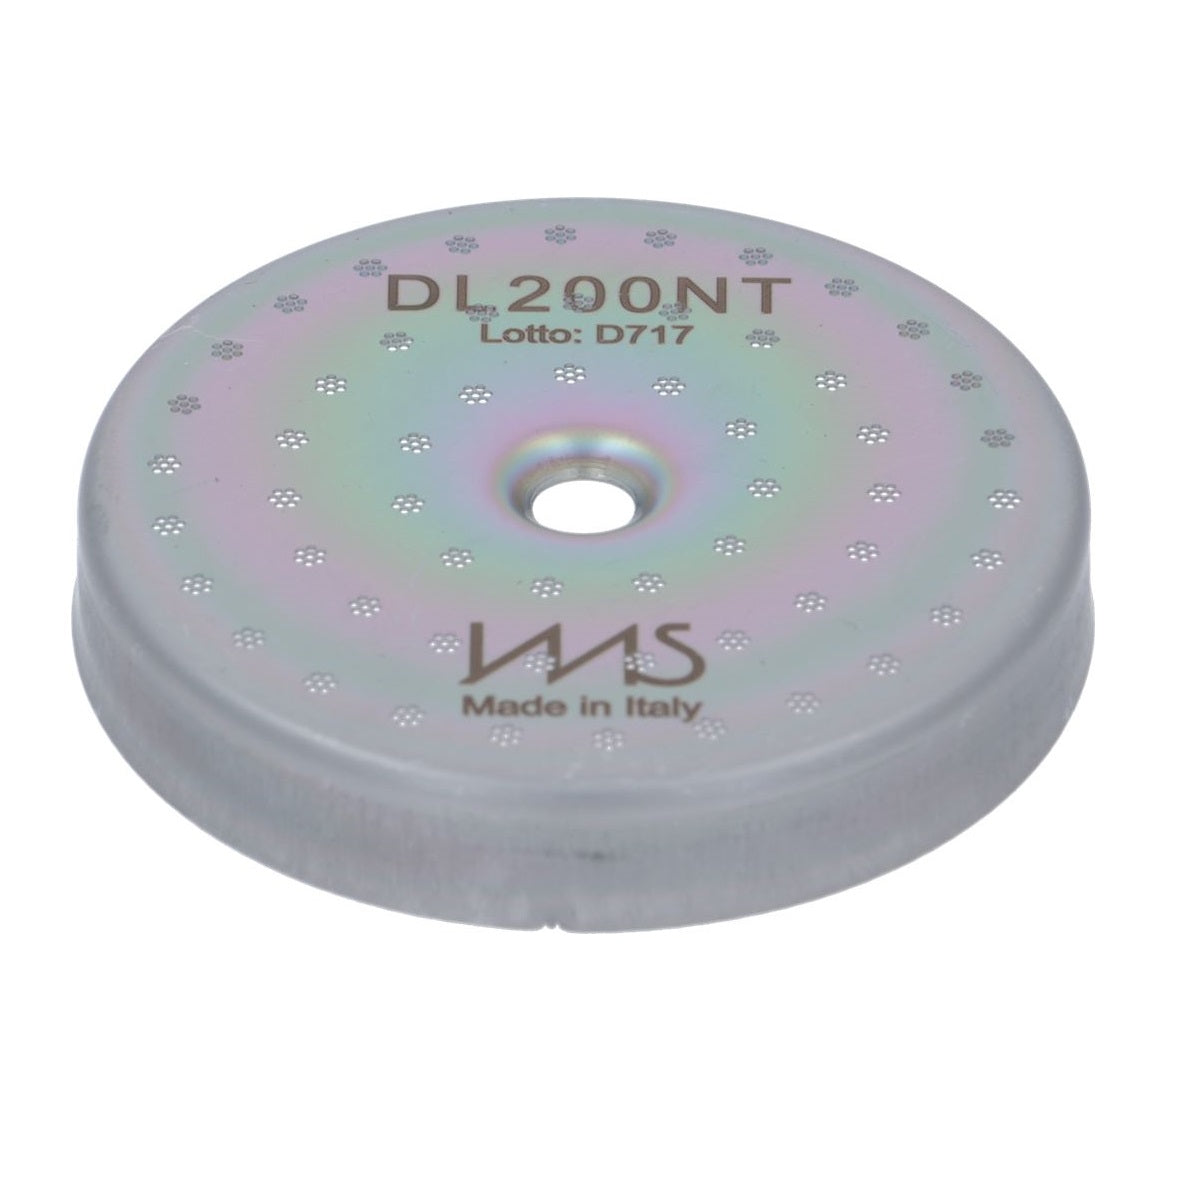 IMS Nanotech Series Shower Screen Delonghi 50.5mm (DL 200 NT)